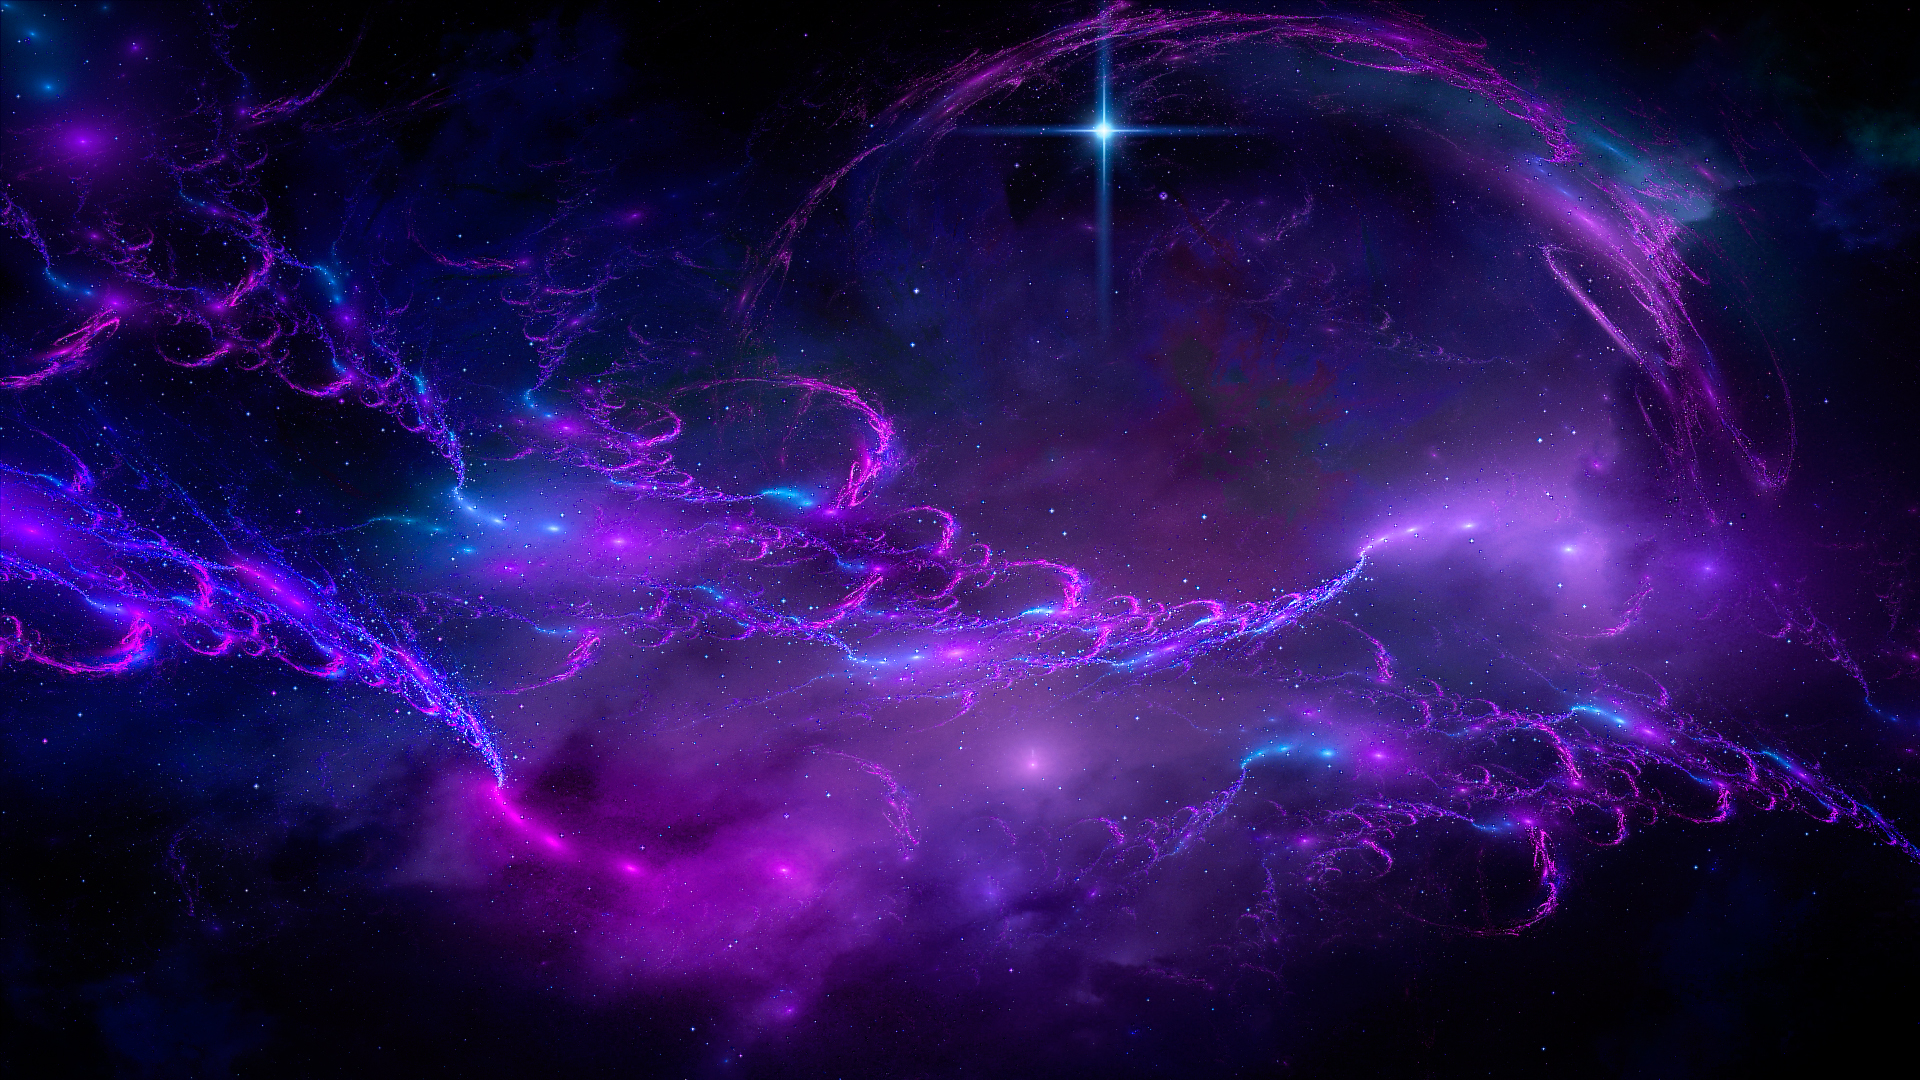 Музыка для видео спокойная на задний фон. Фиолетовый космос. Космос фон. Неоновый космос. Красивый космический фон.